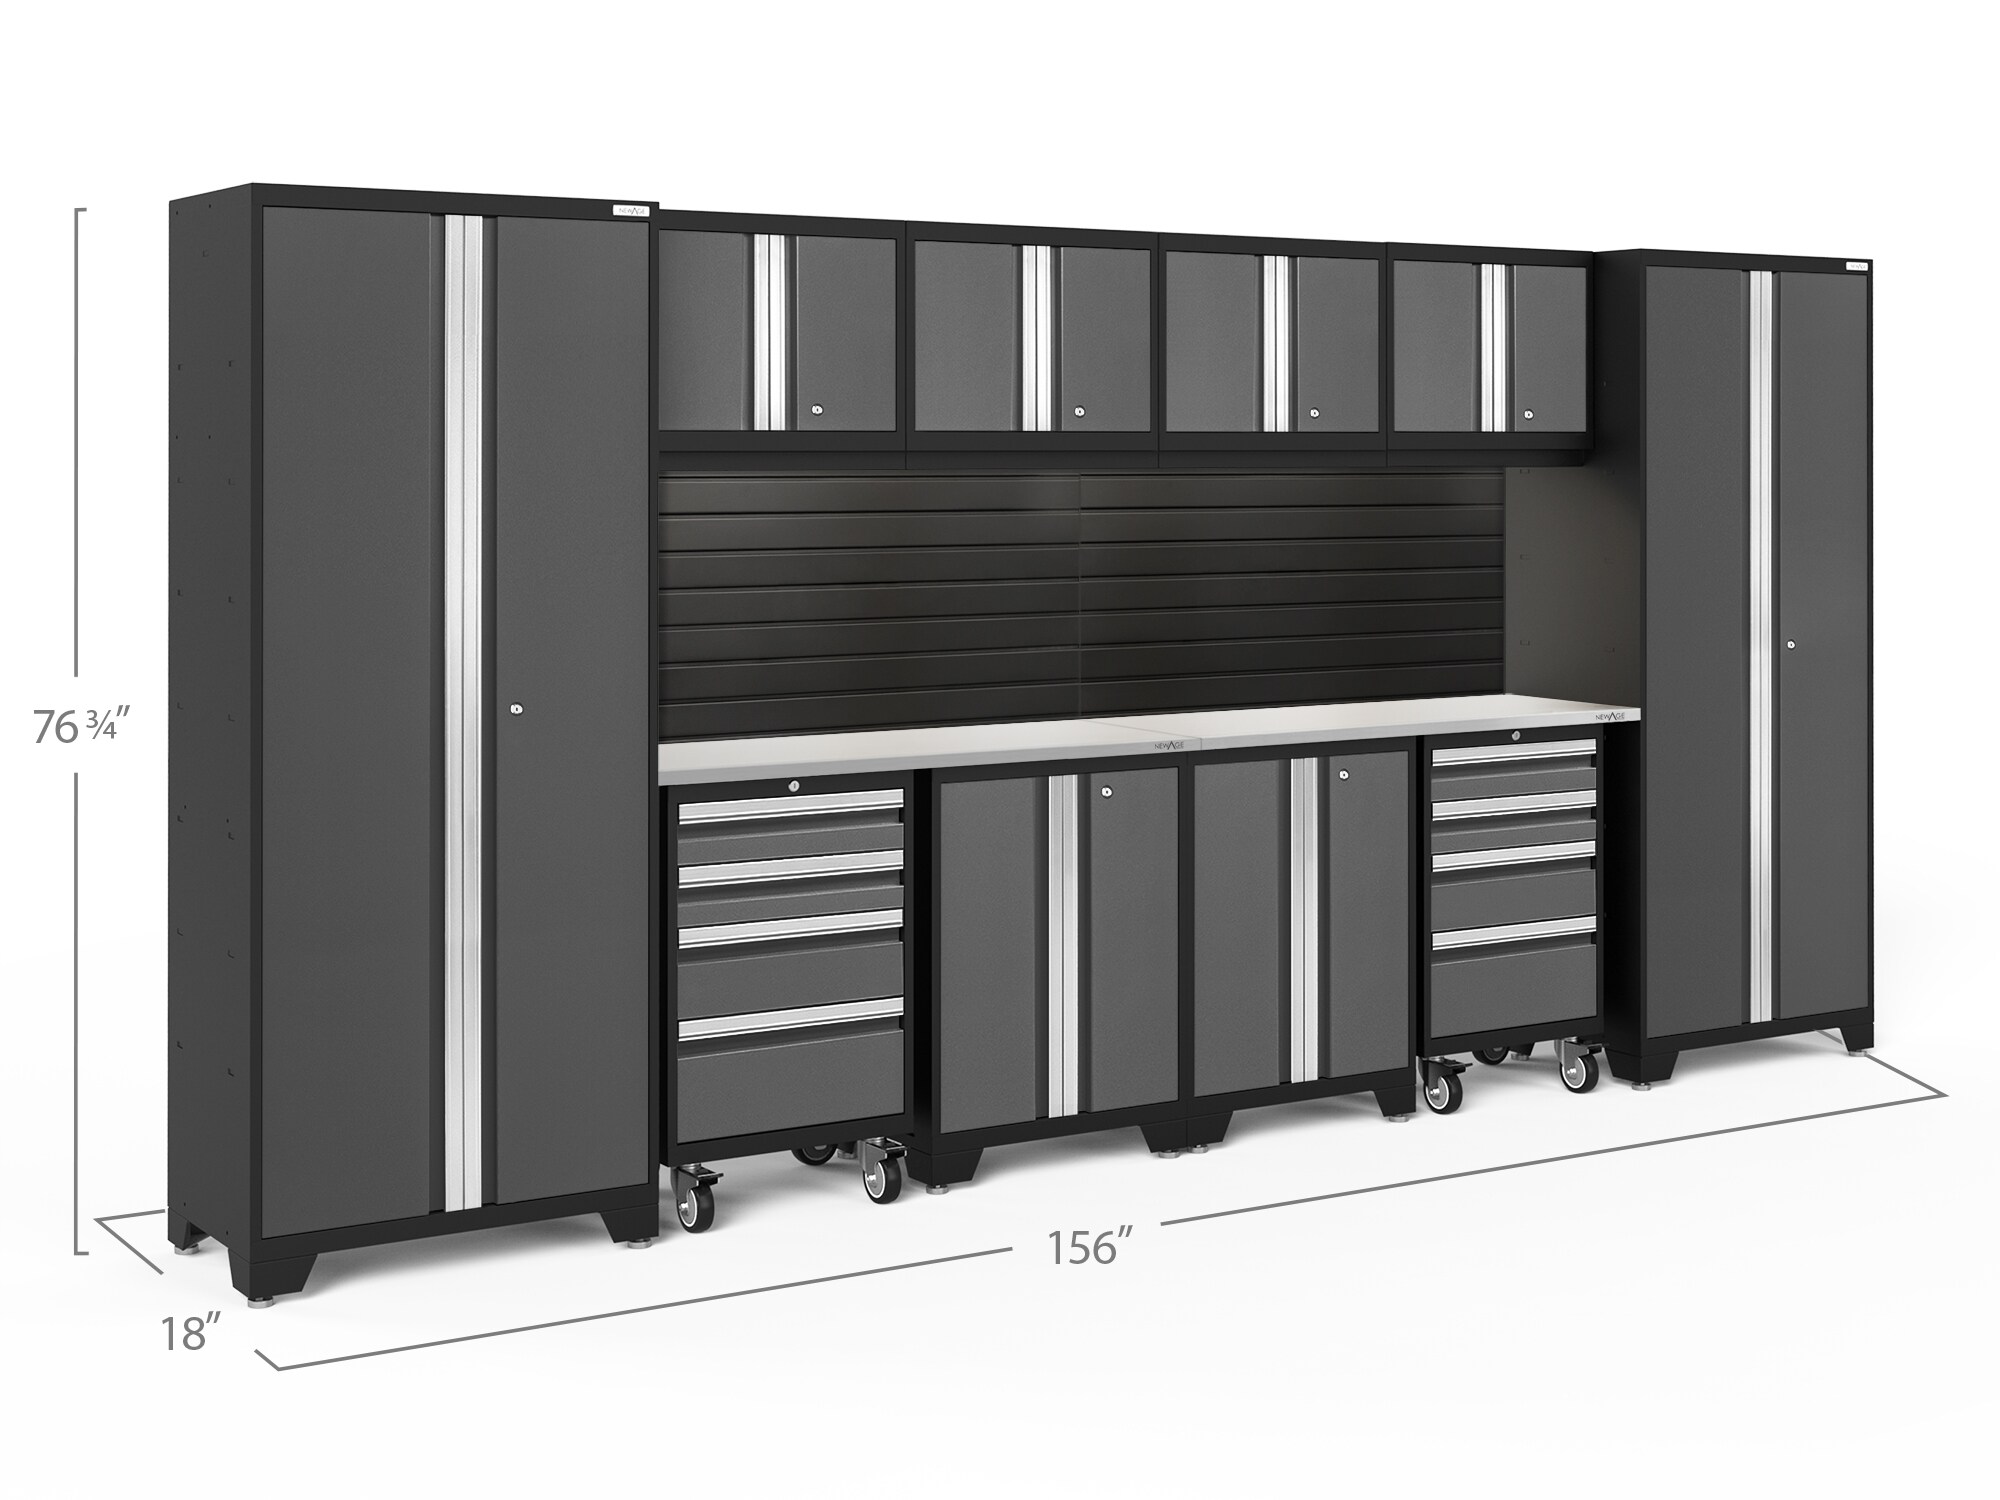 10 Cabinets Steel Garage Storage System